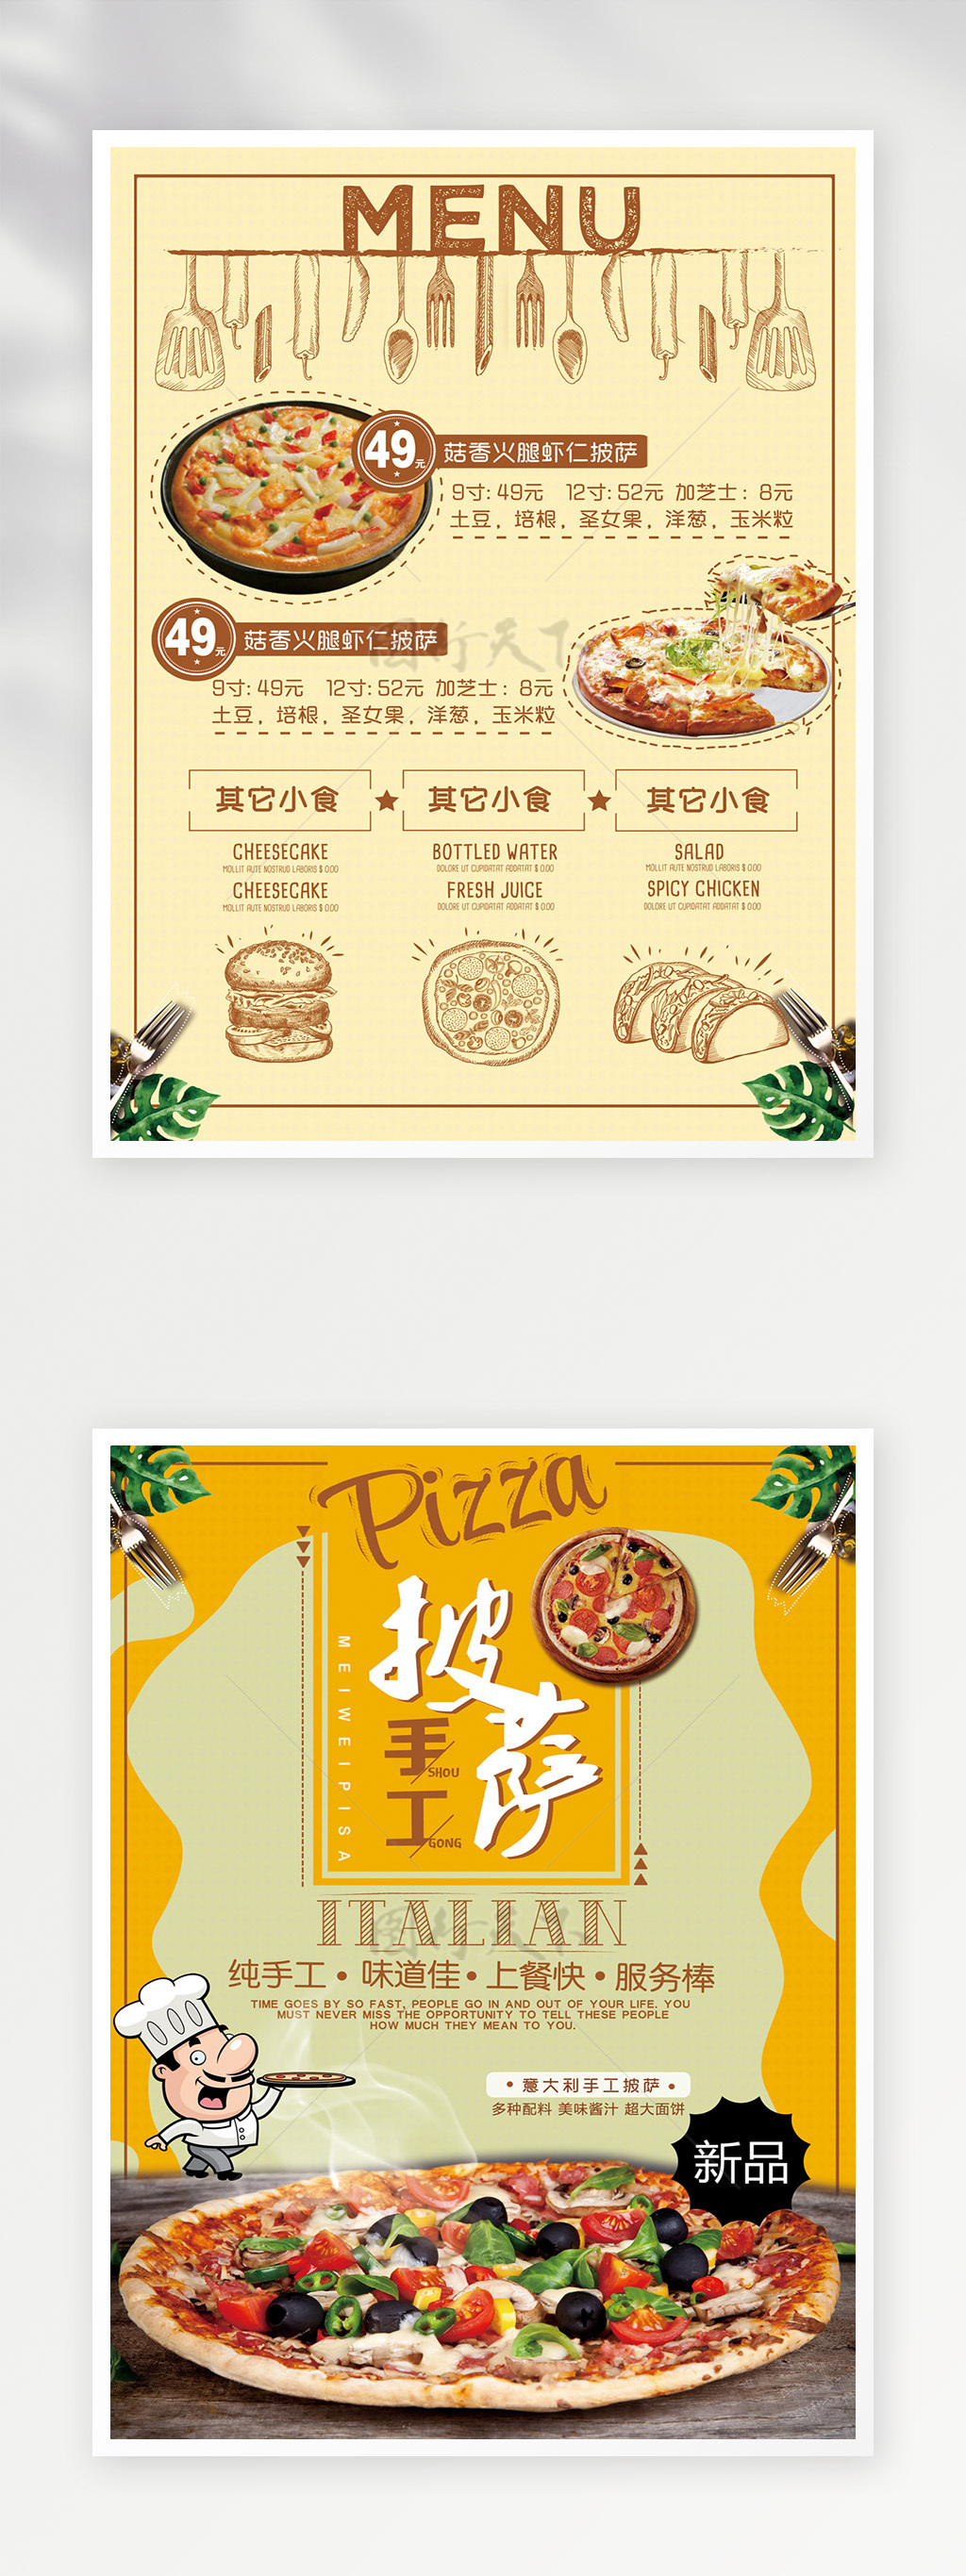 简约披萨菜单设计模板